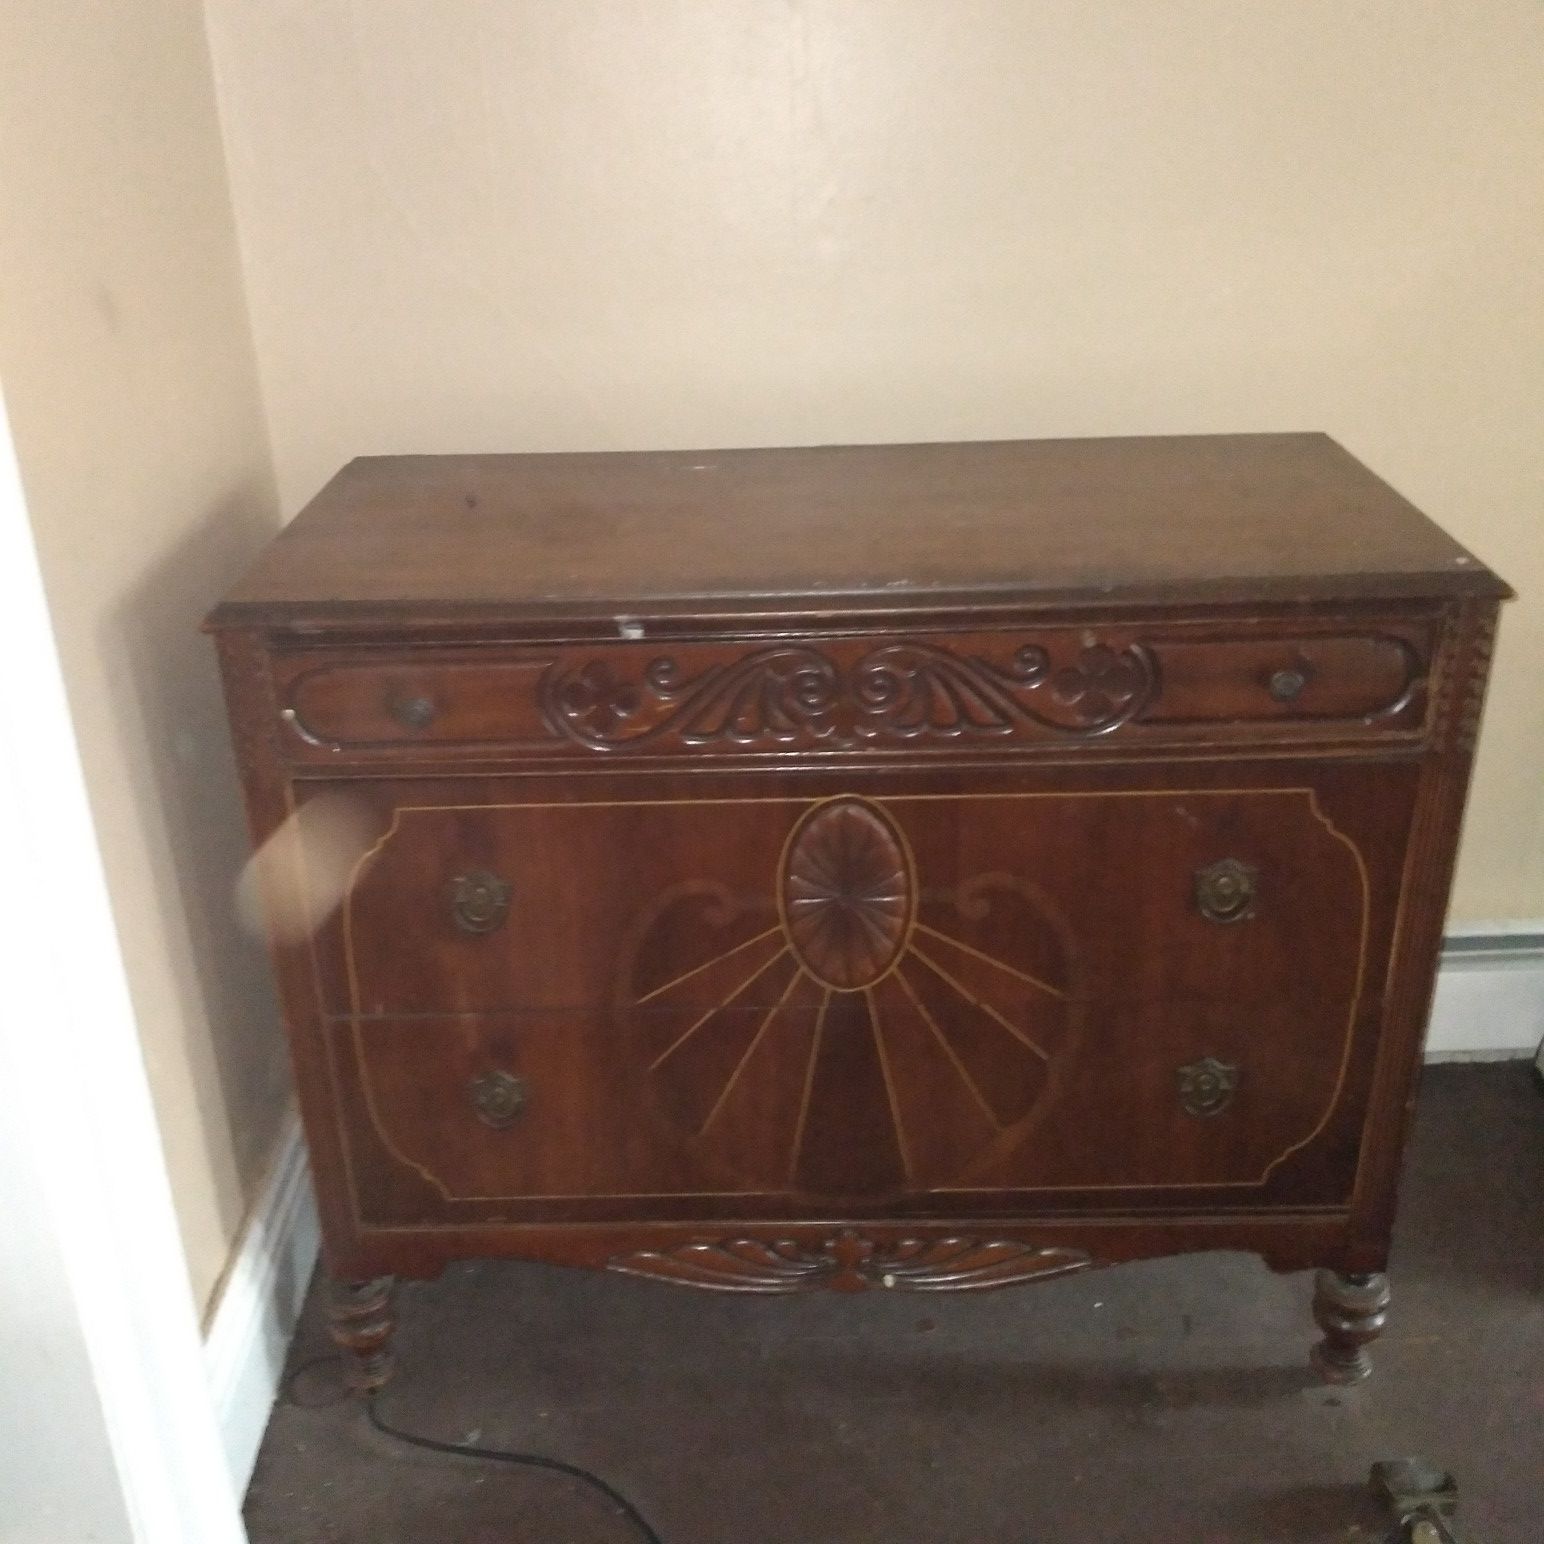 Vintage wood dresser